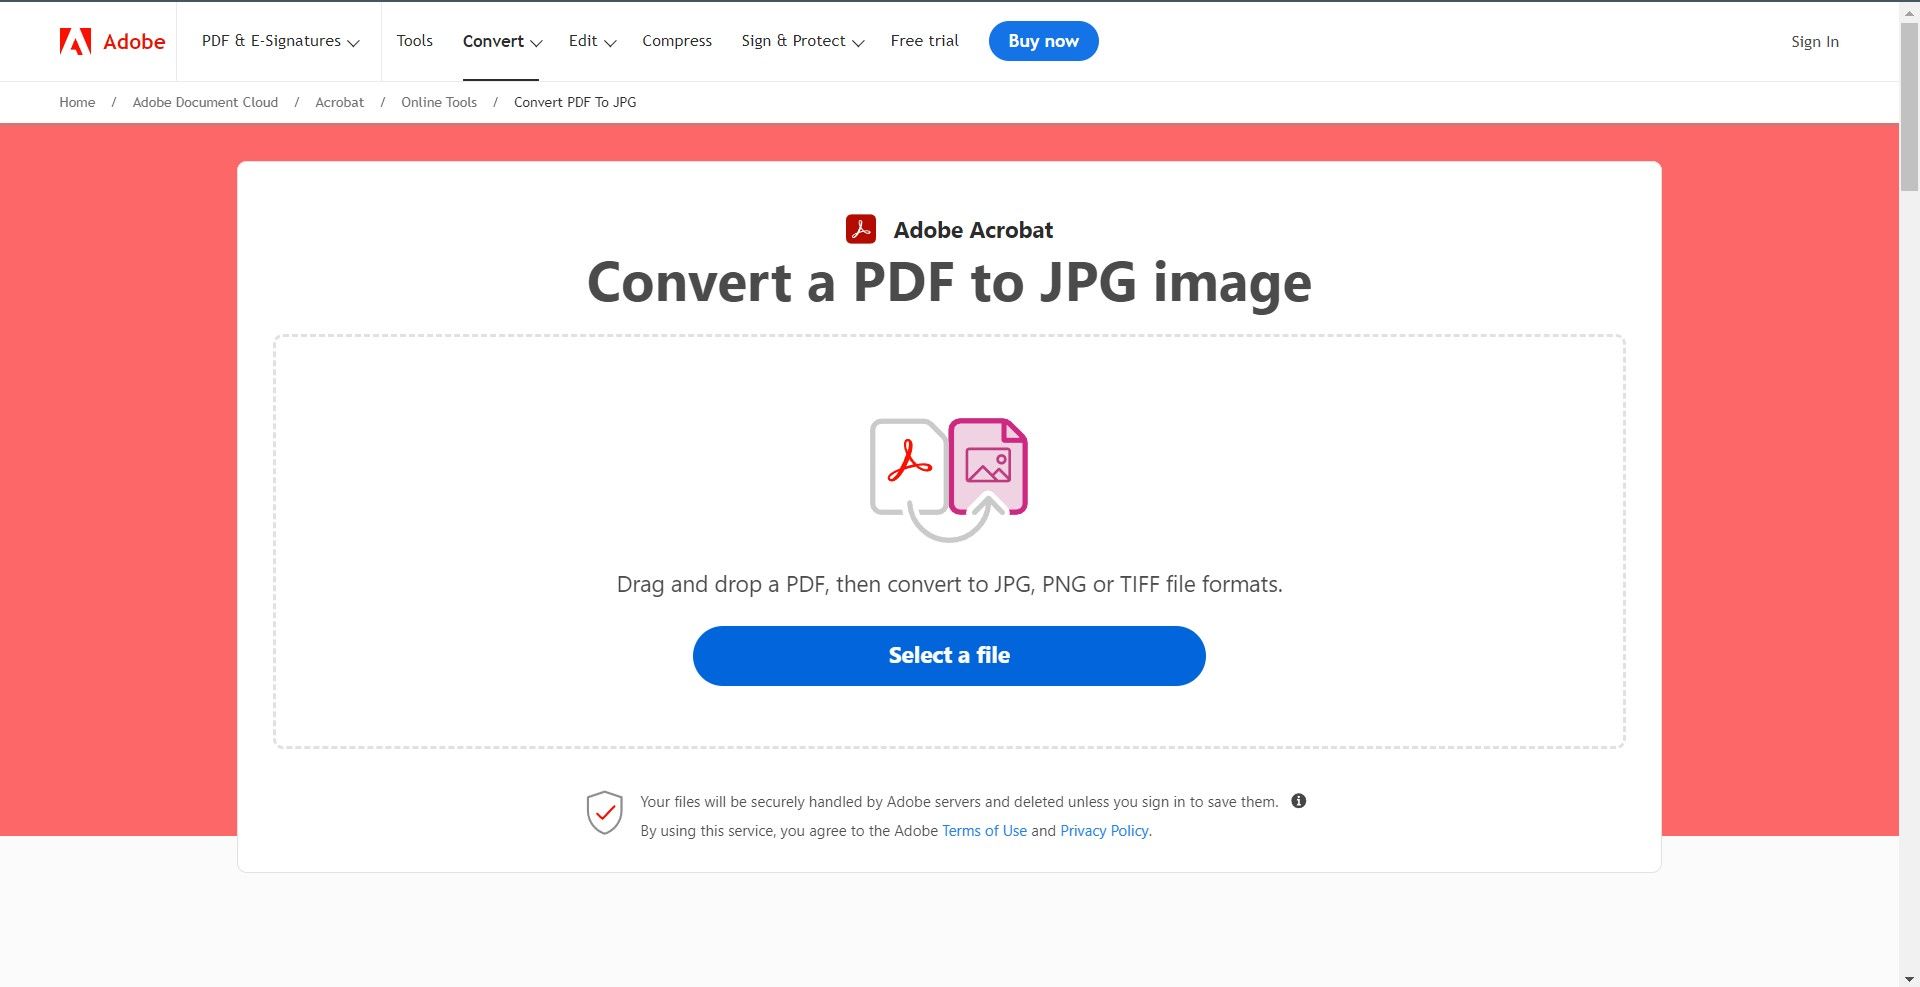 a interface da ferramenta online Adobe Acrobat para converter um PDF em uma imagem JPG.